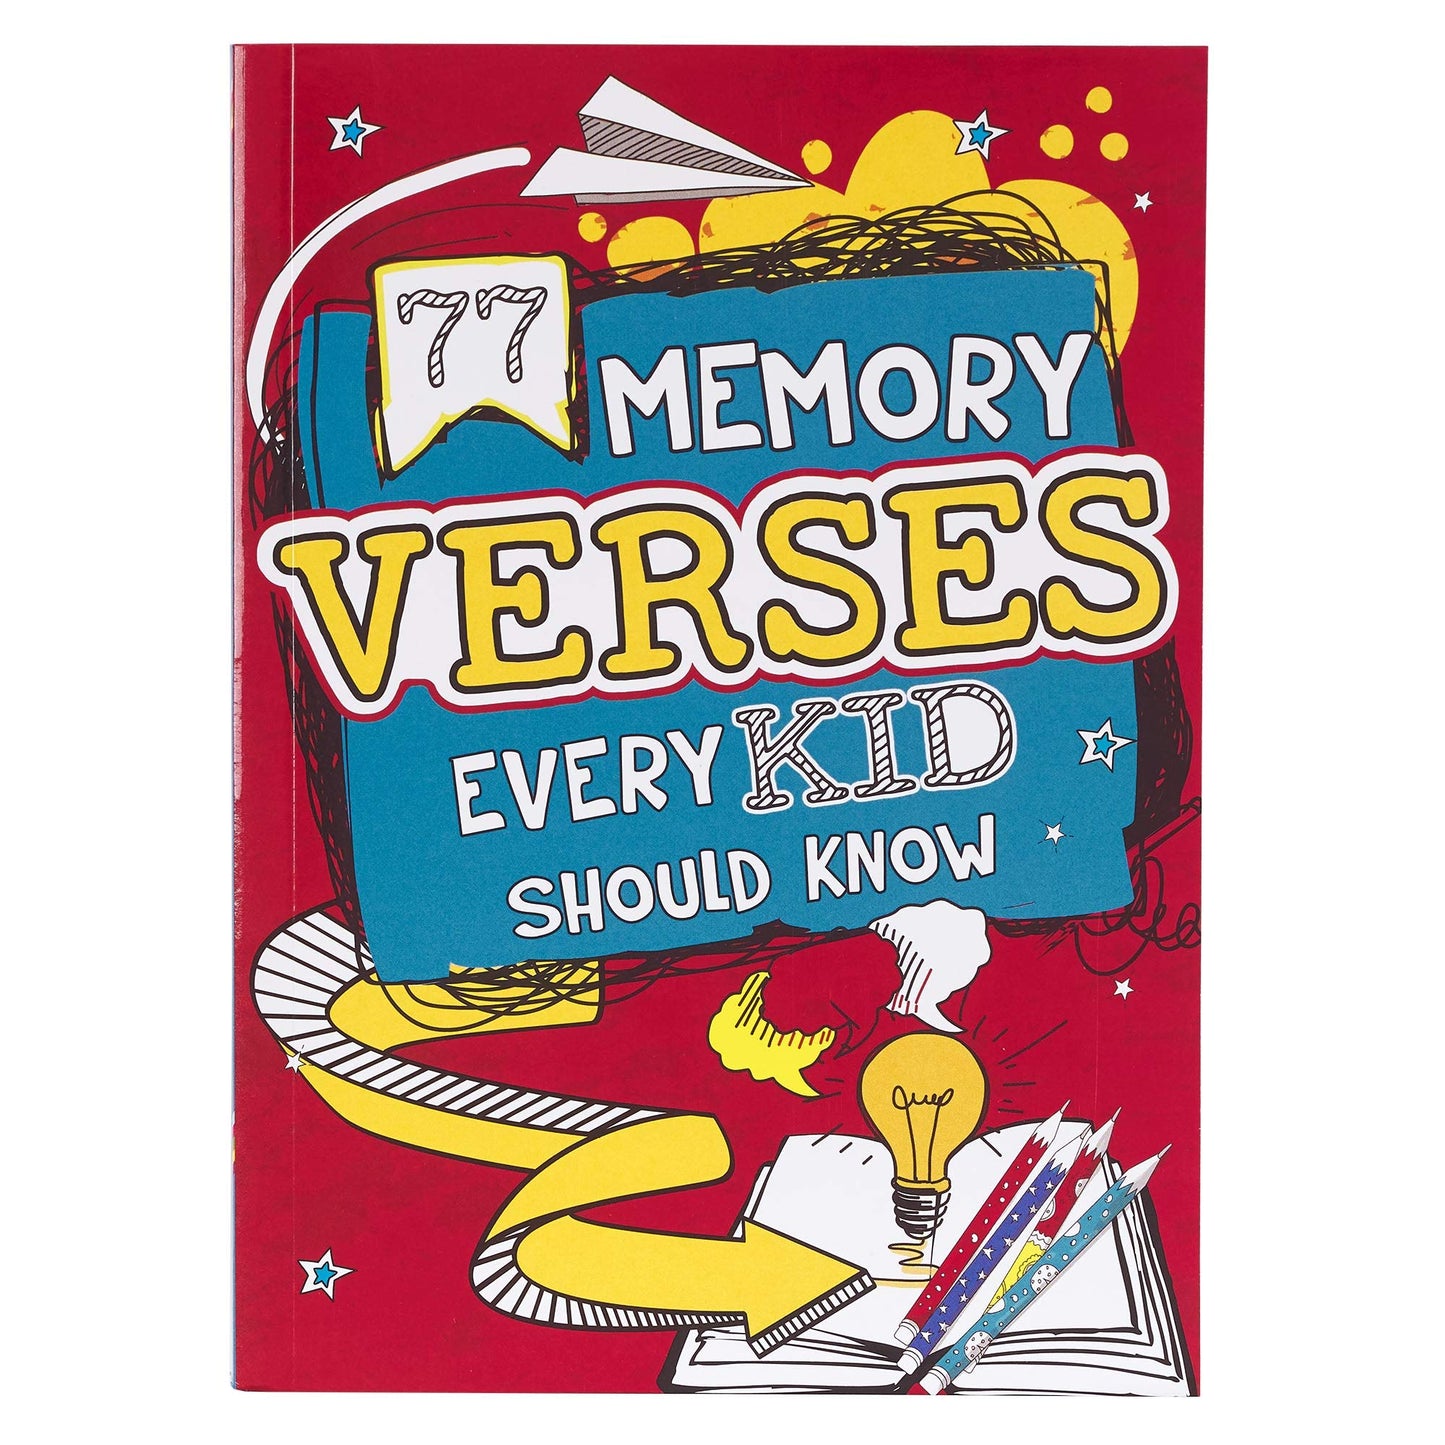 77 versículos para memorizar que todo niño debe saber